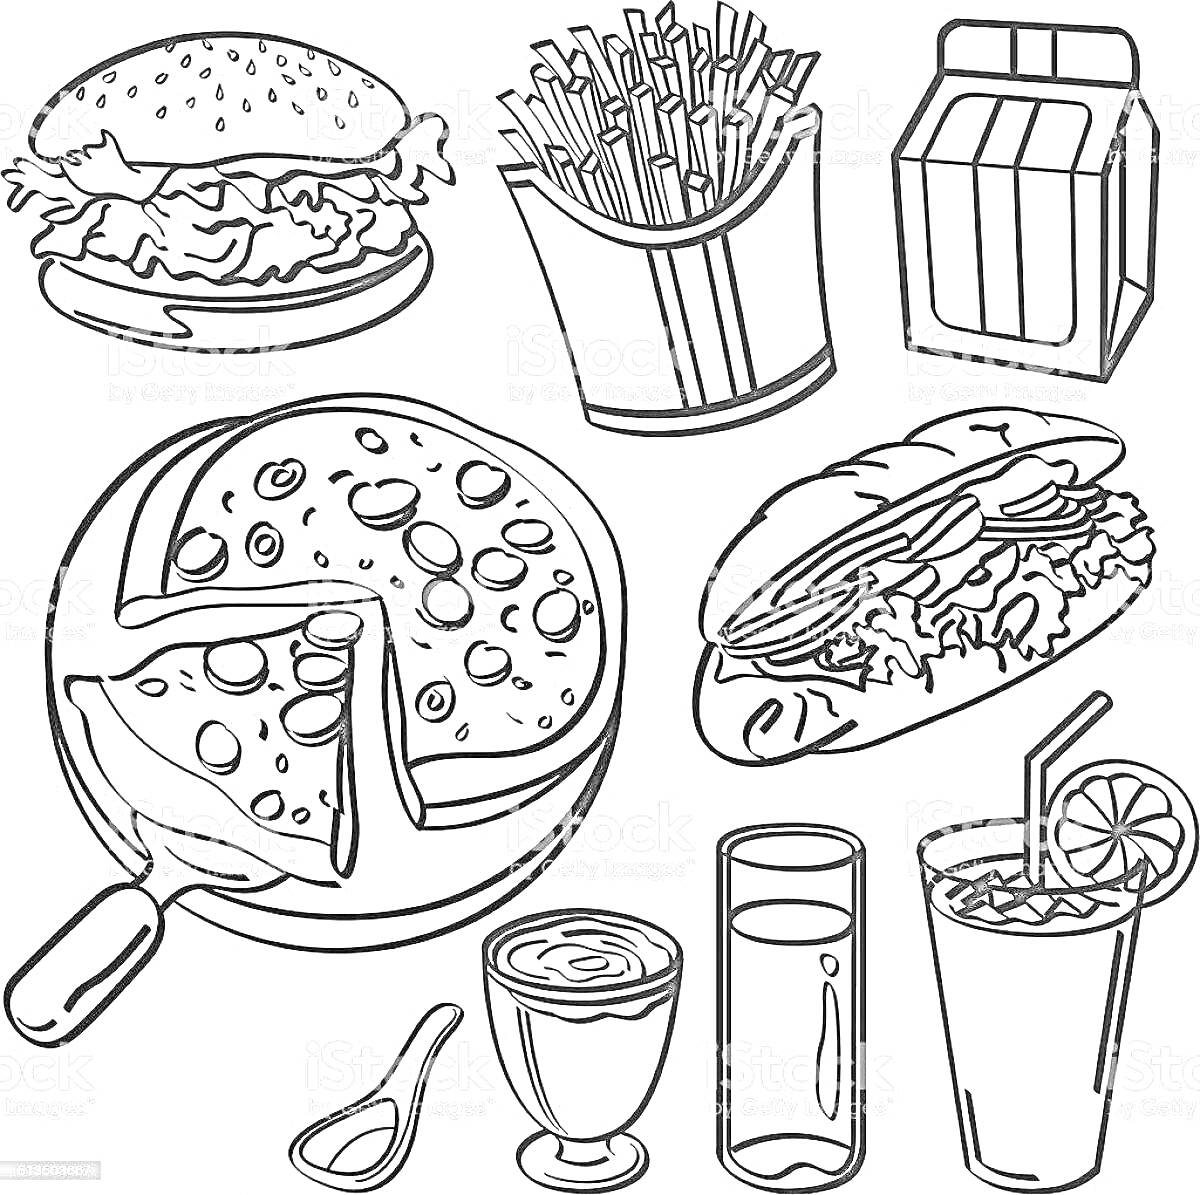 Раскраска бургер, картофель фри, коробка, сэндвич, пицца, мороженое, ложка, стакан воды, стакан с трубочкой и лимоном